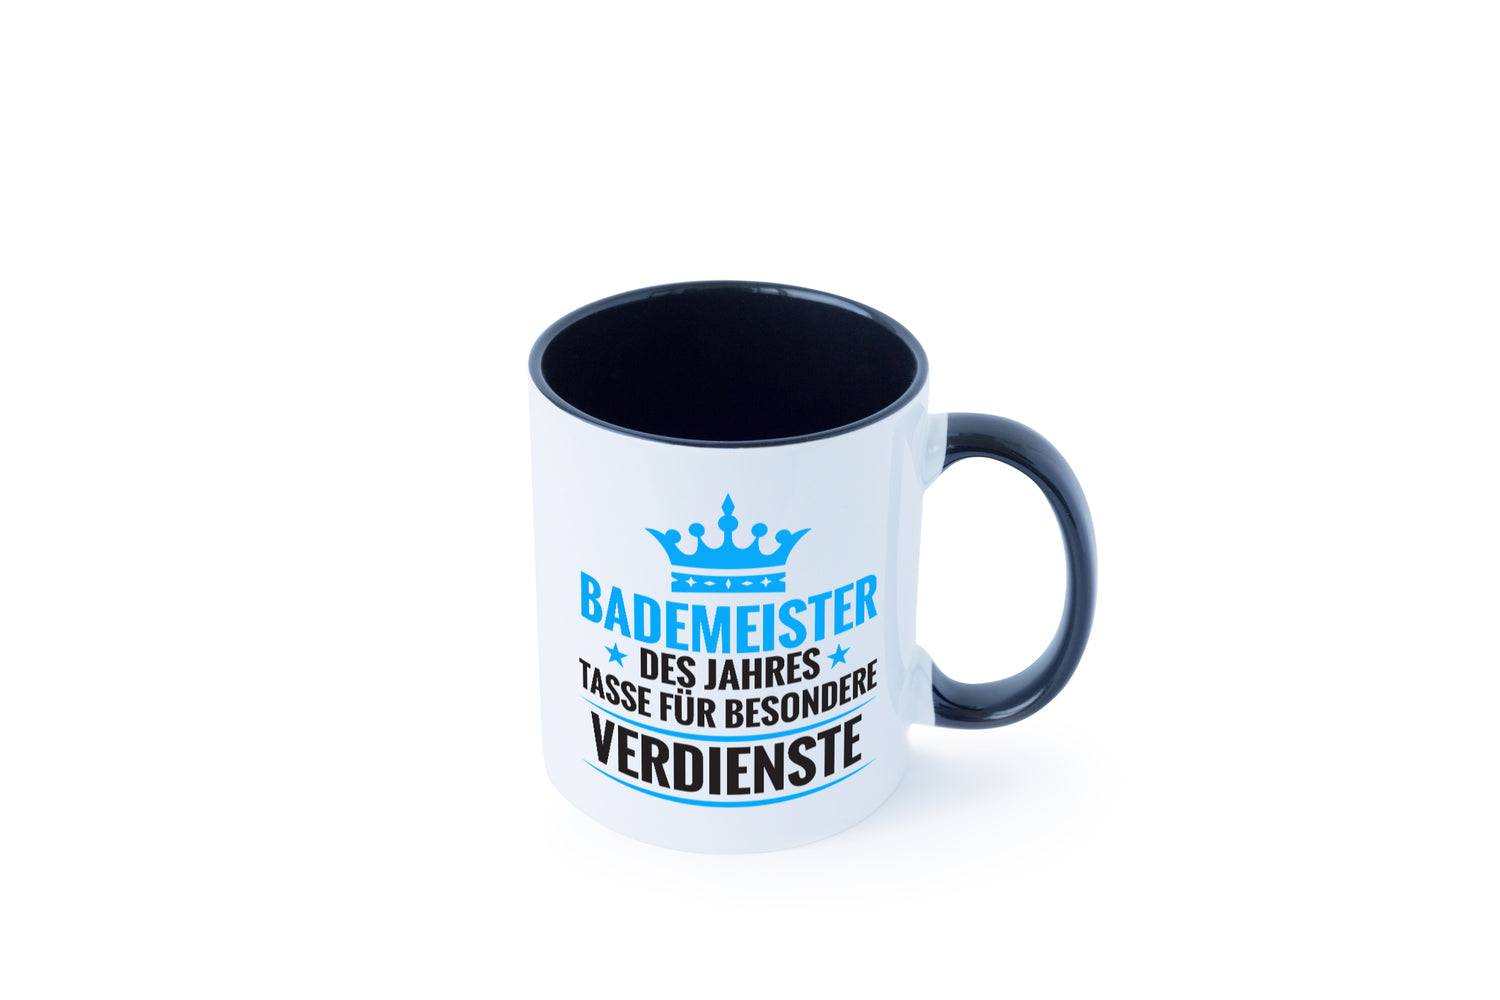 Besonderer Verdienst: Bademeister | Rettungsschwimmer Tasse Weiß - Schwarz - Kaffeetasse / Geschenk / Familie